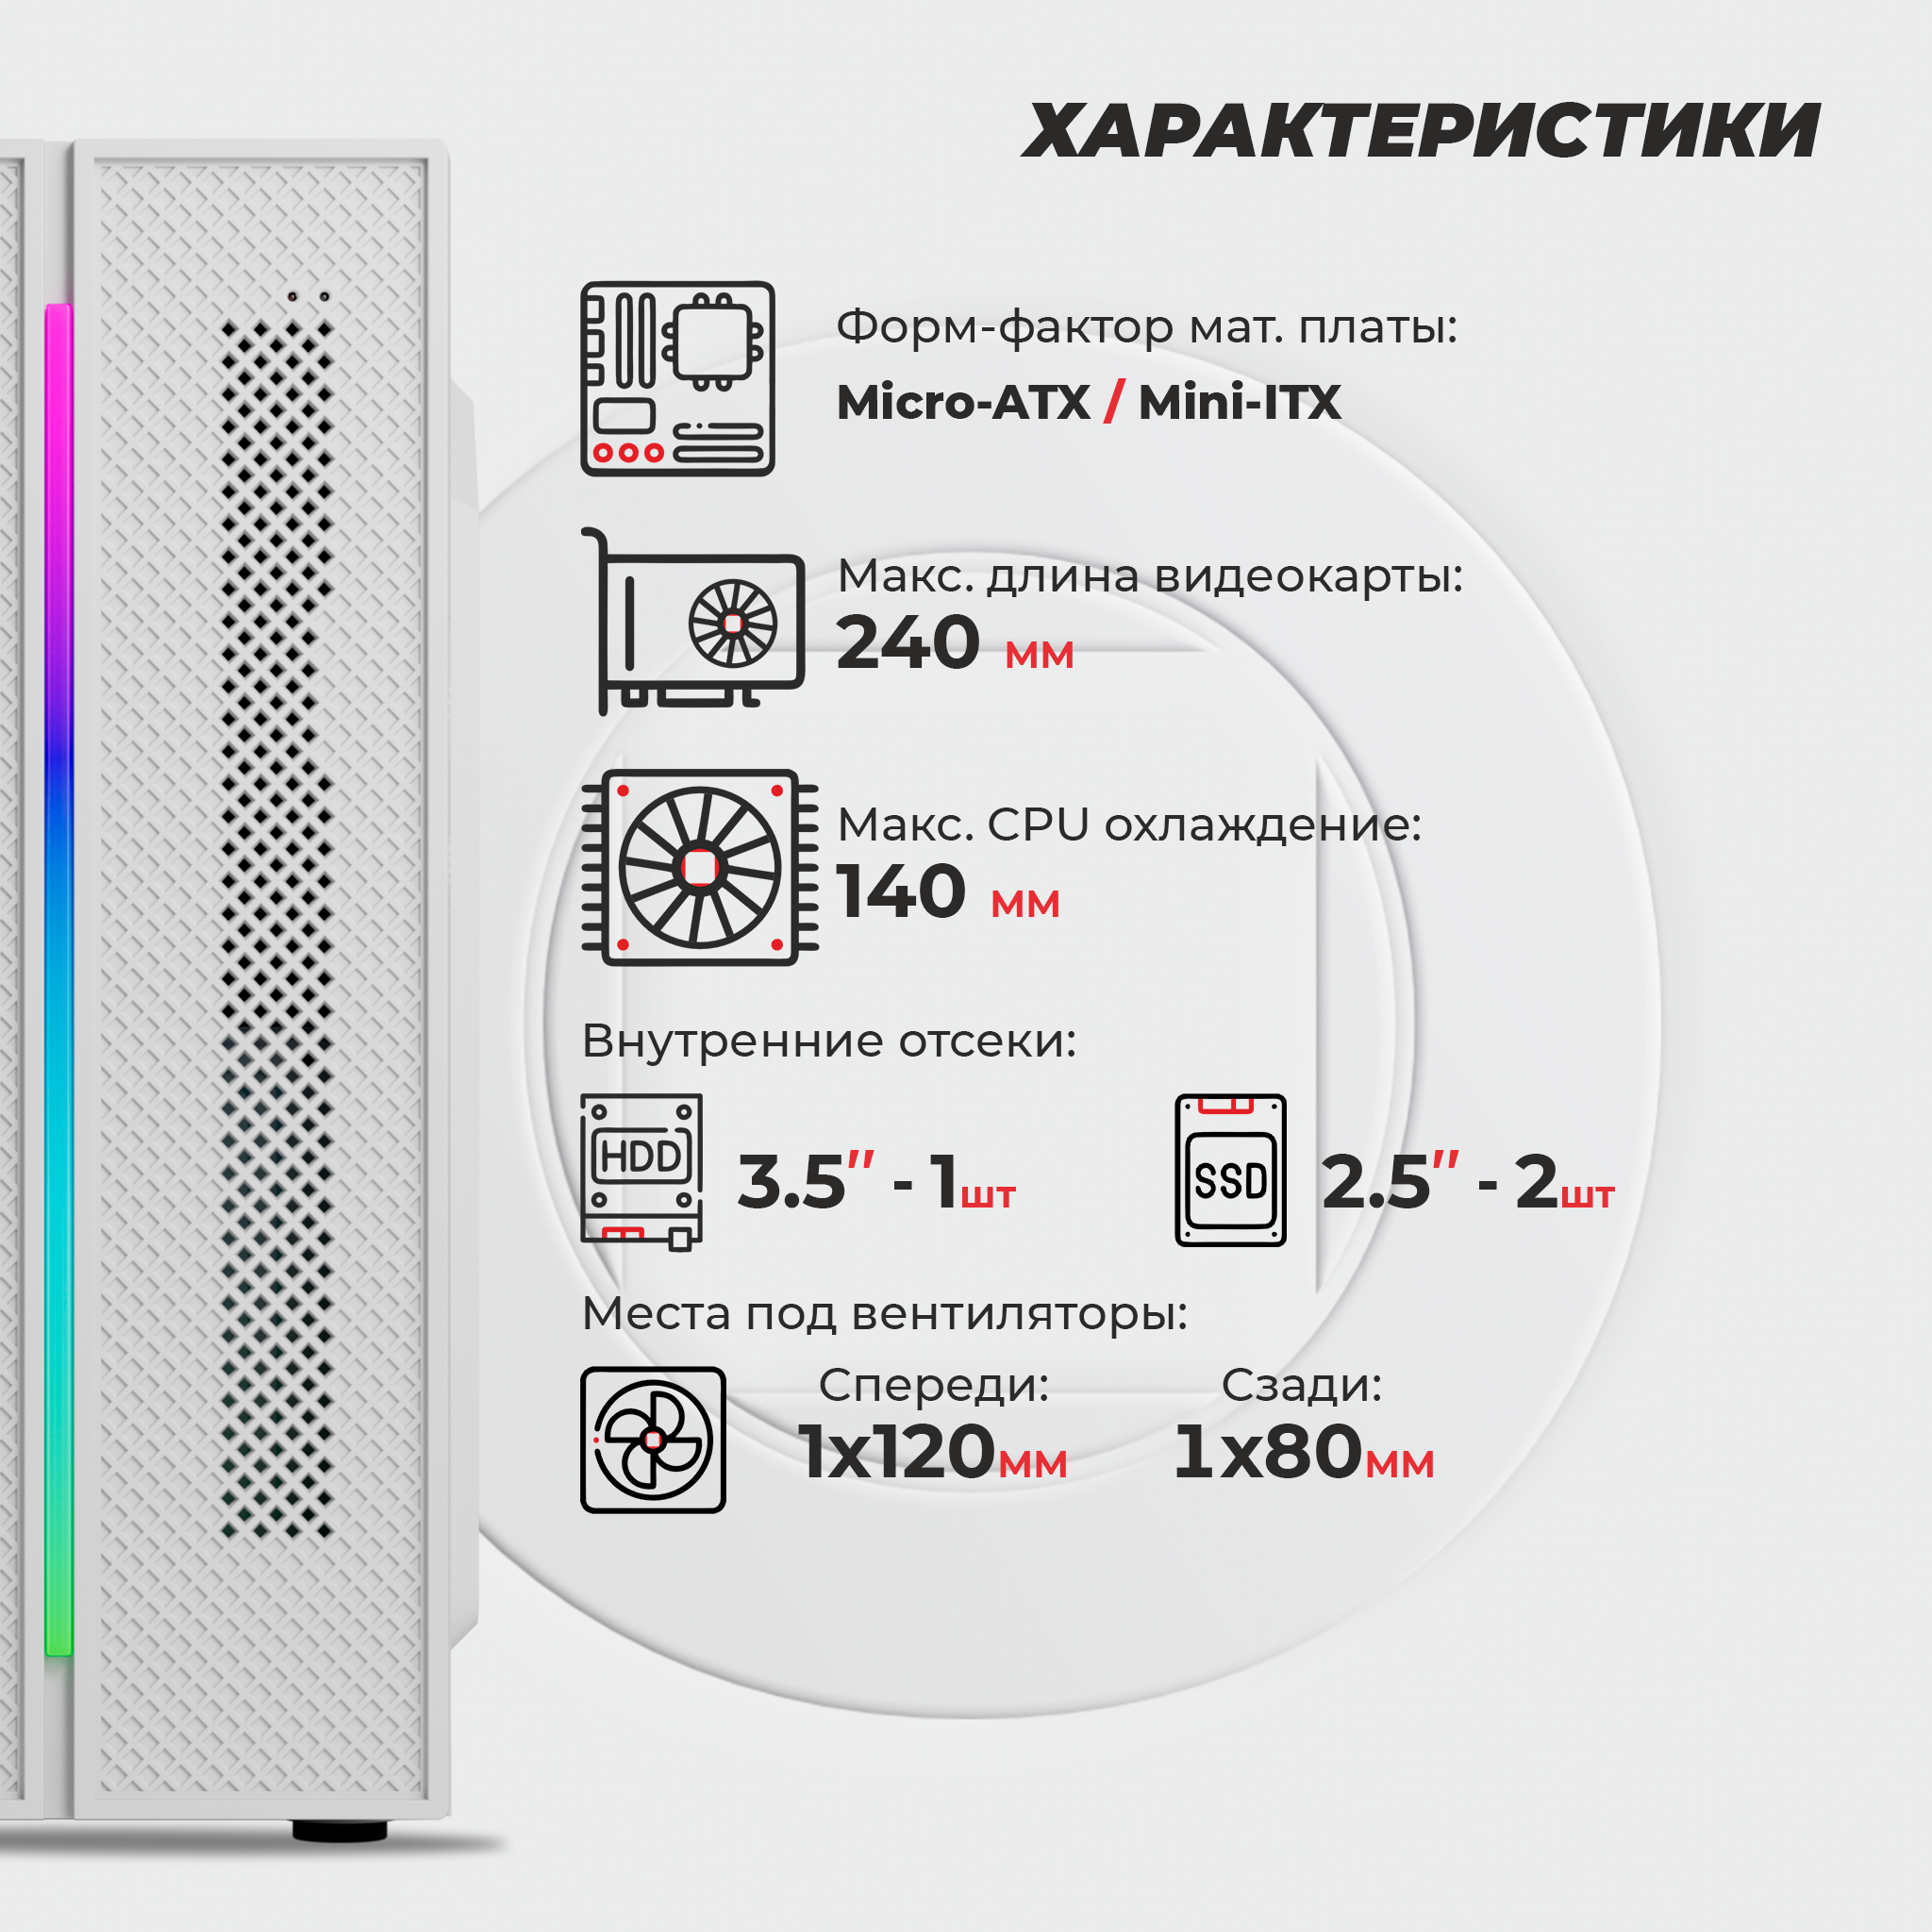 Корпус Prime Box К709 RGB (2 - USB 2.0; 1 - USB 3.0) белый Micro-ATX, Mini-ITX